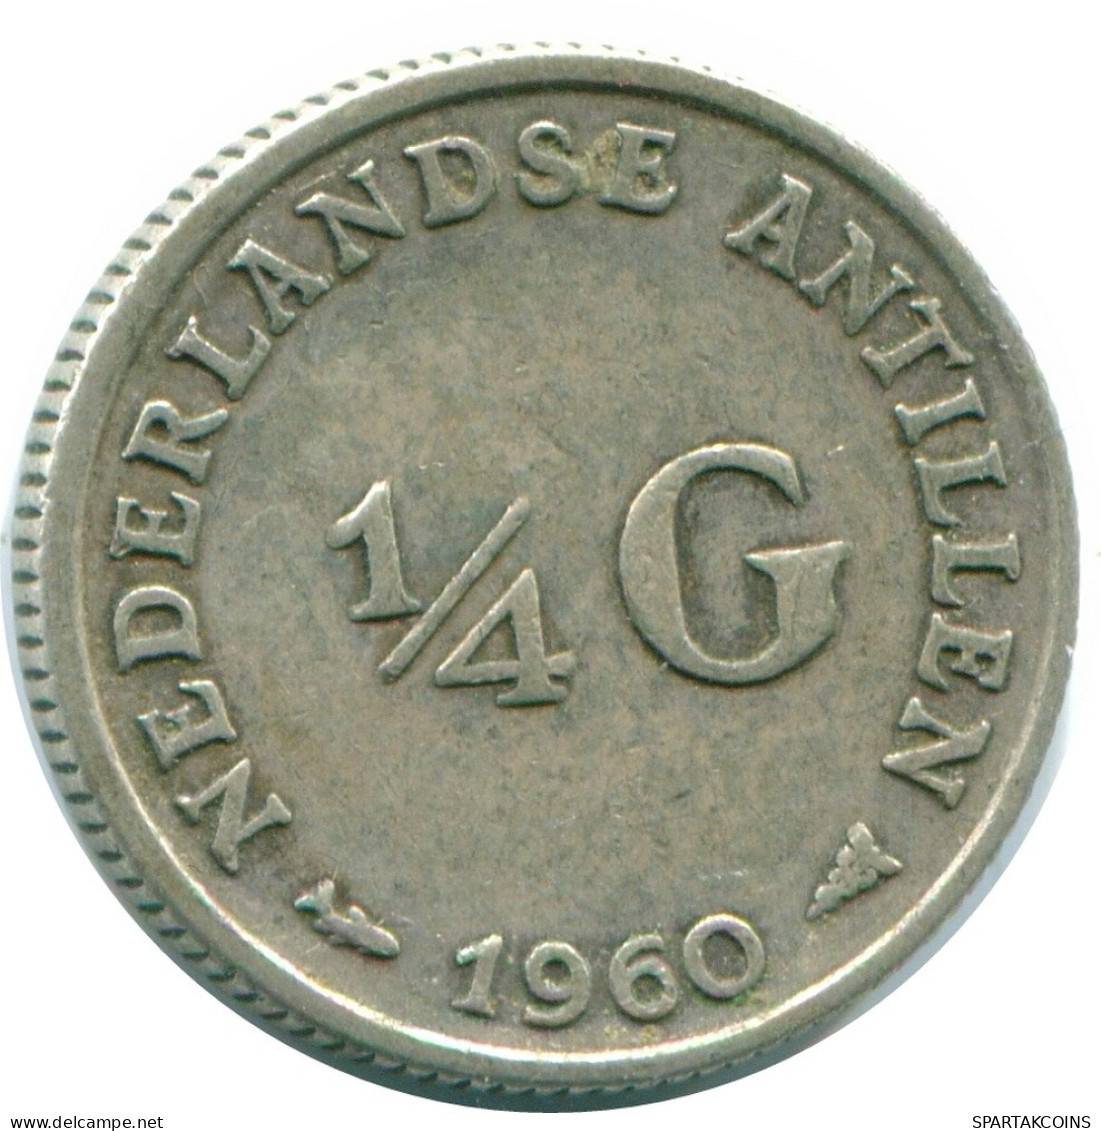 1/4 GULDEN 1960 NIEDERLÄNDISCHE ANTILLEN SILBER Koloniale Münze #NL11050.4.D.A - Niederländische Antillen